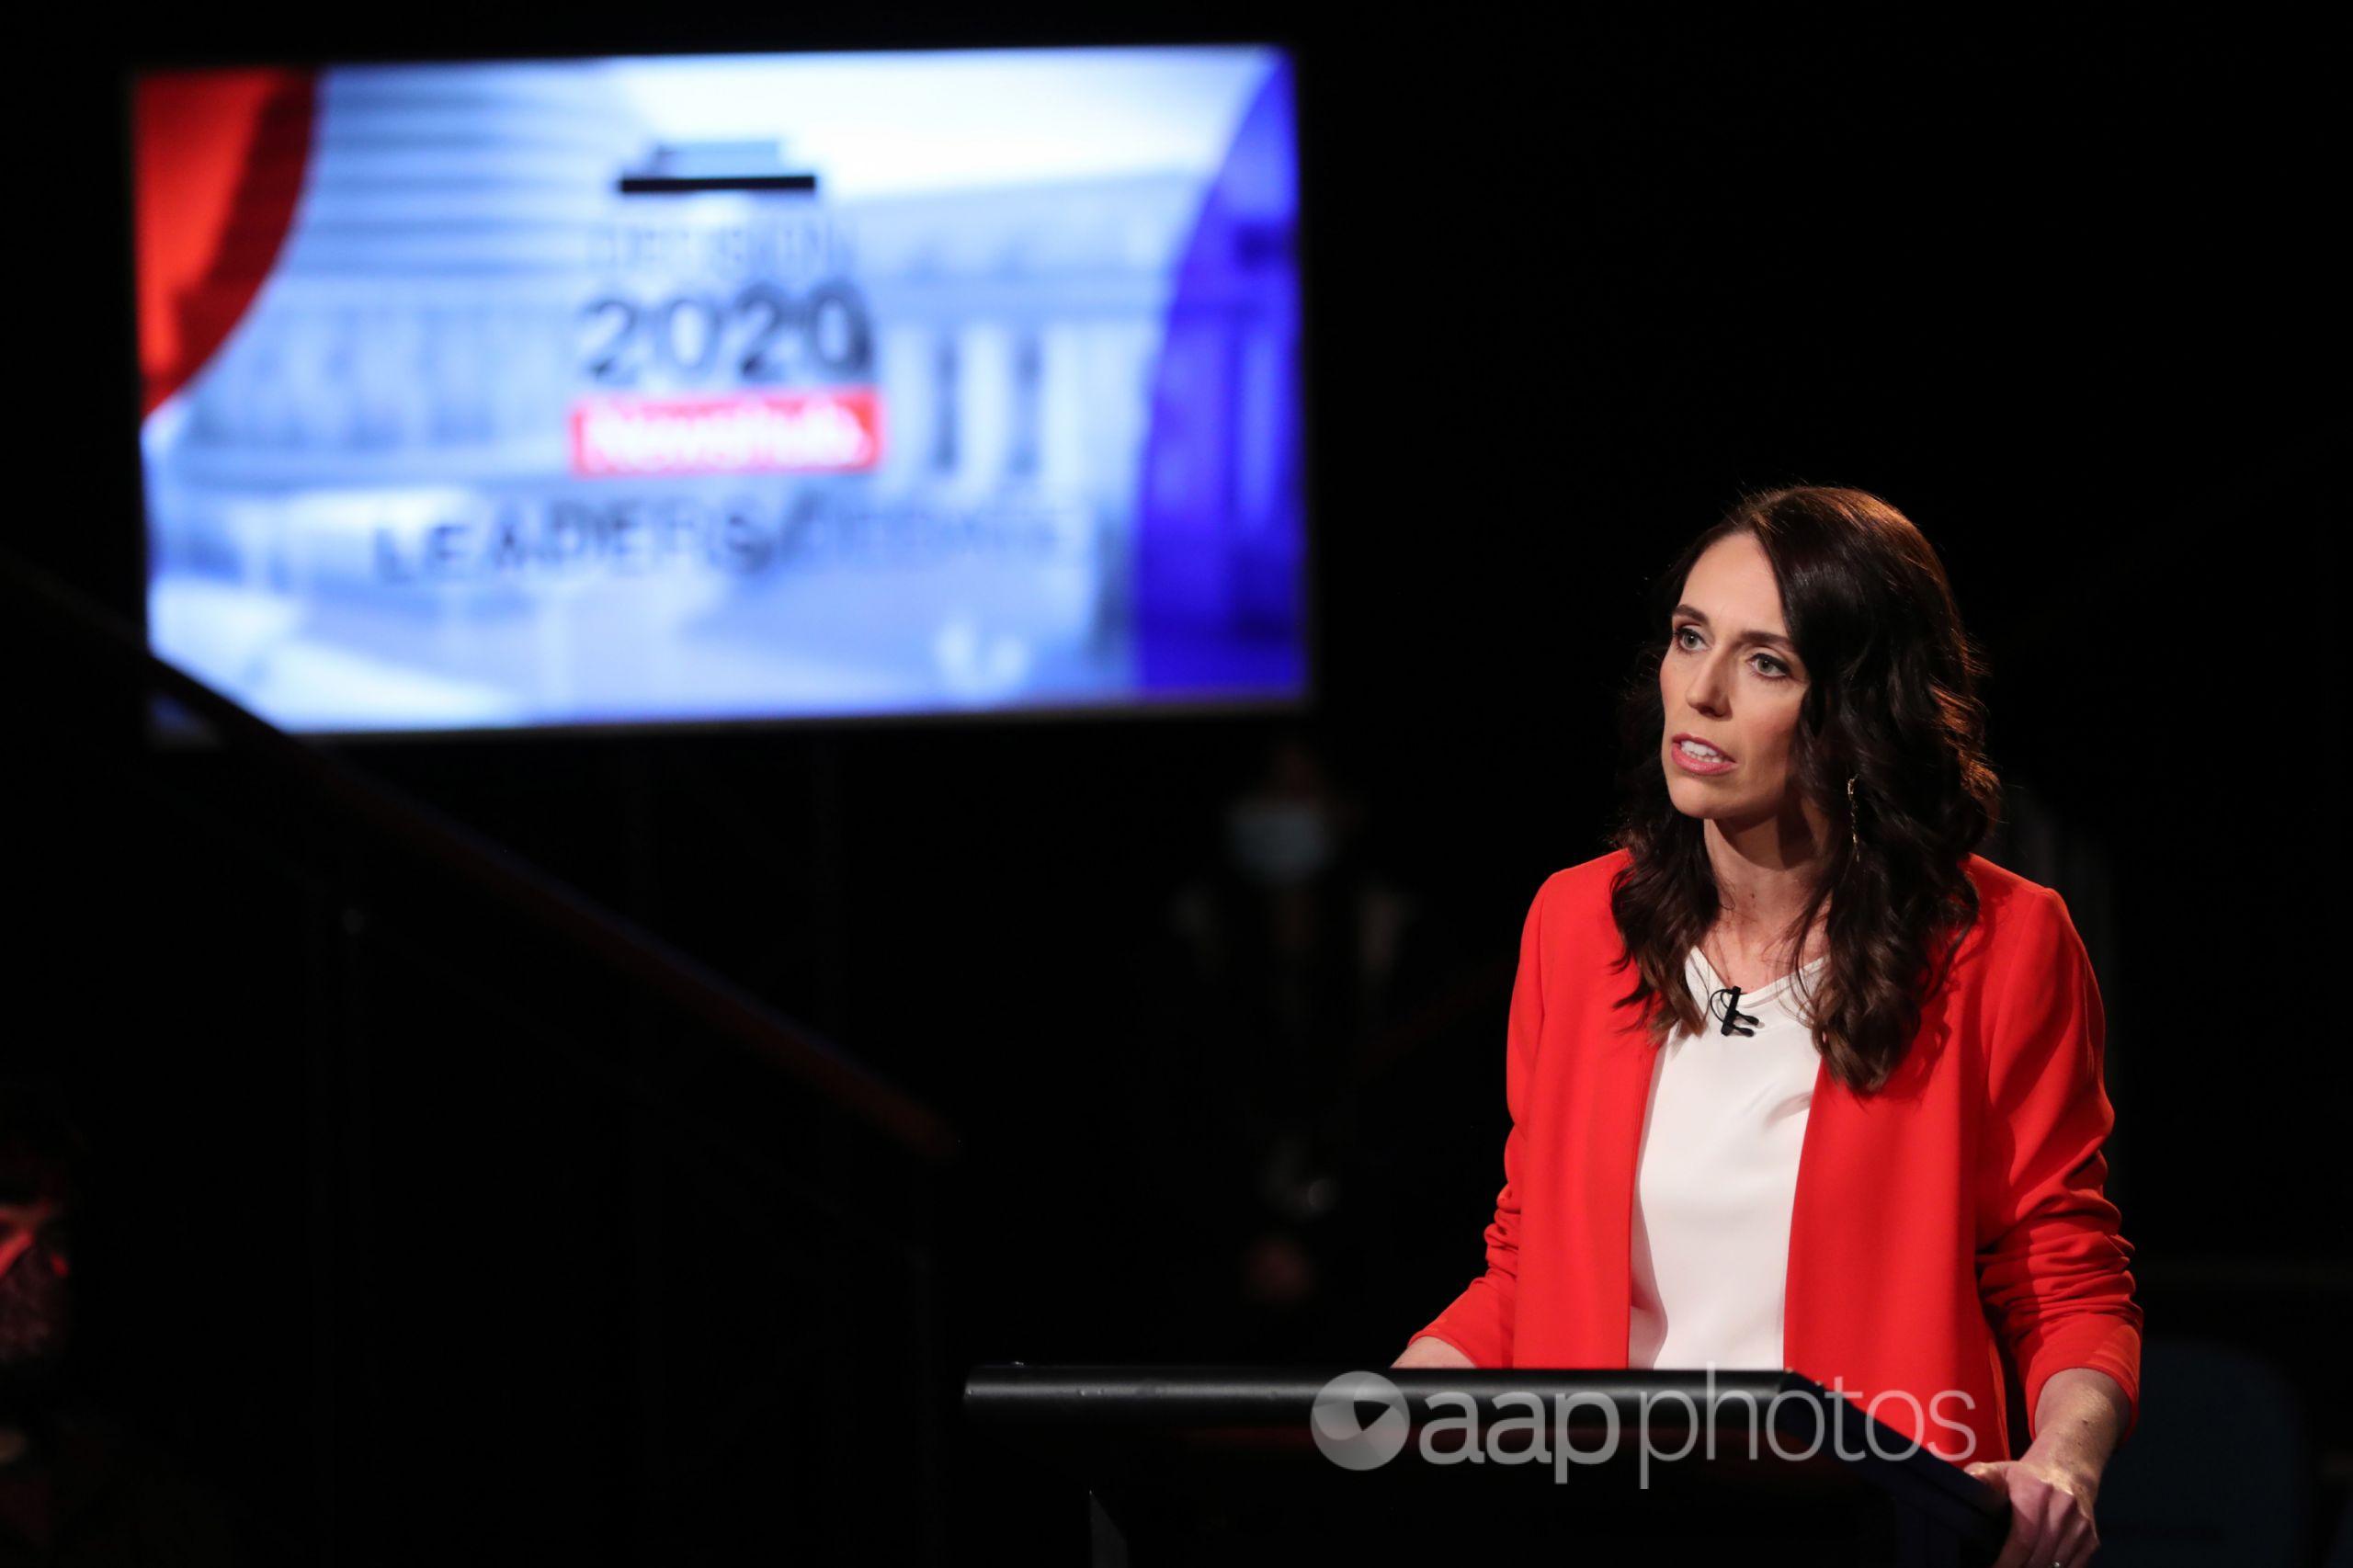 NZ Prime Minister Jacinda Ardern at a televised leaders' debate